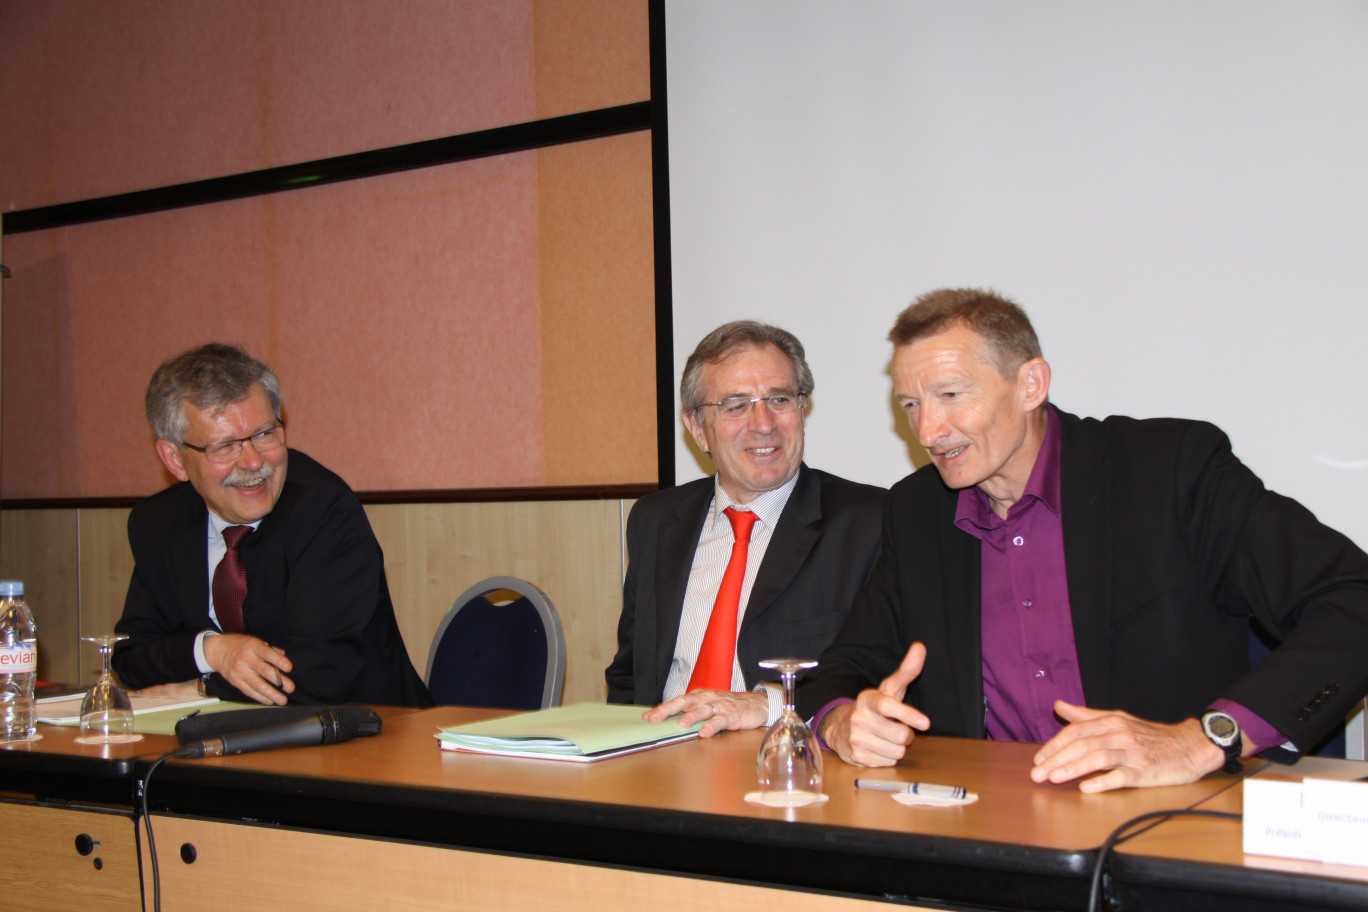 De gauche à droite, lors de la conférence de presse : Claude Lenglet, directeur du projet 3ème révolution industrielle en Nord-Pas de Calais, Philippe Vasseur et Jean-François Caron.